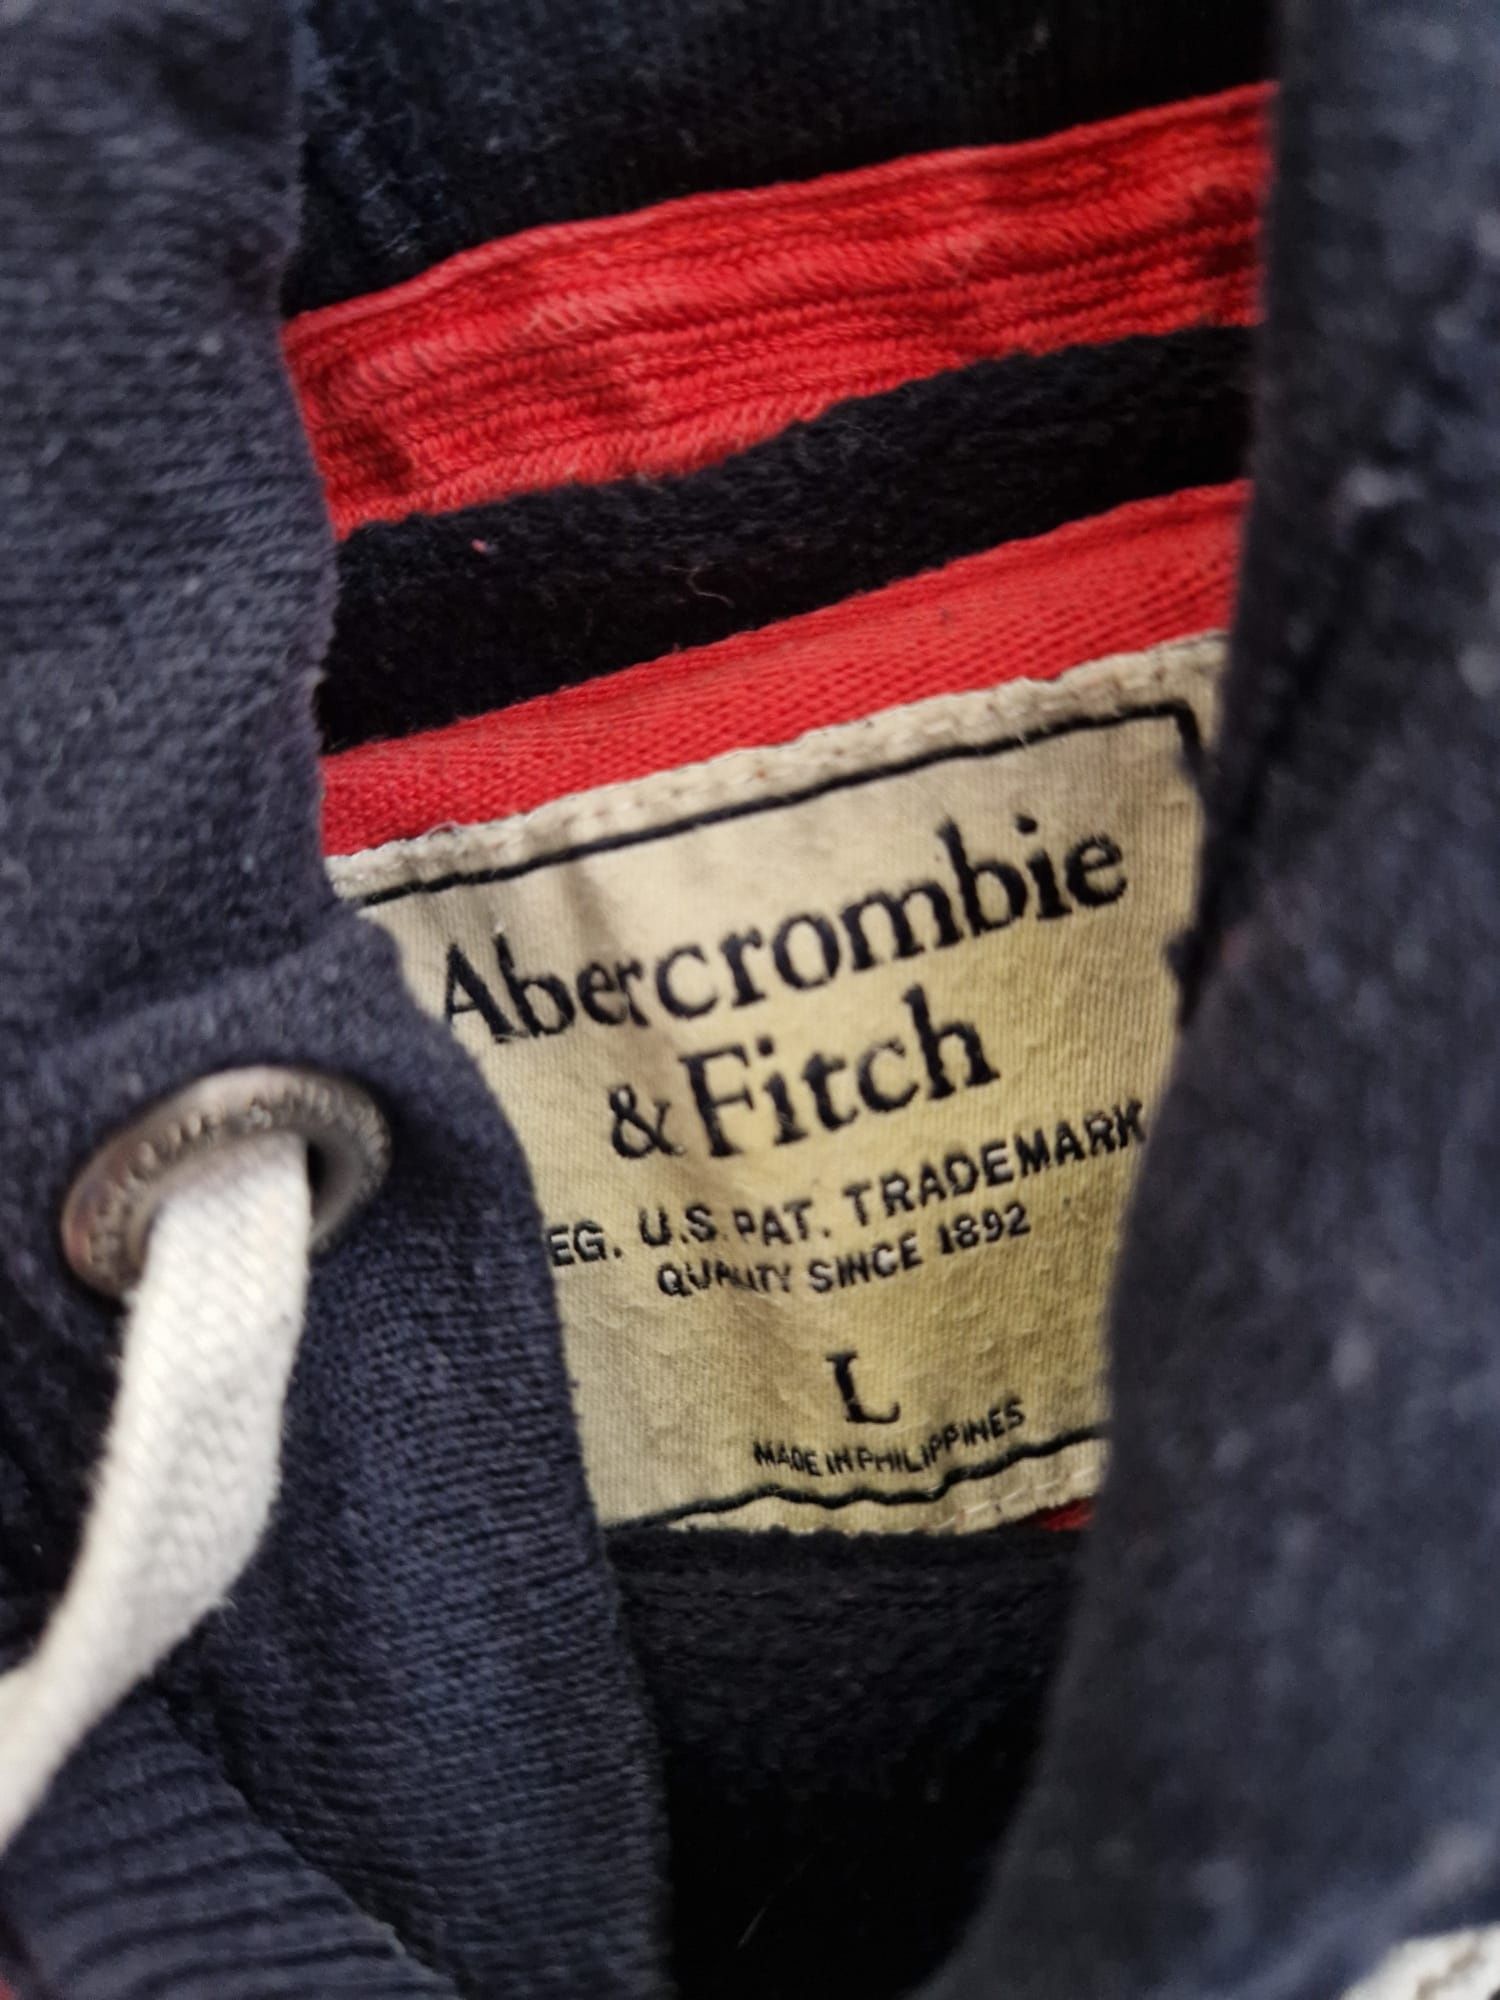 Bluze Abercrombie, Levi's, Lonsdale